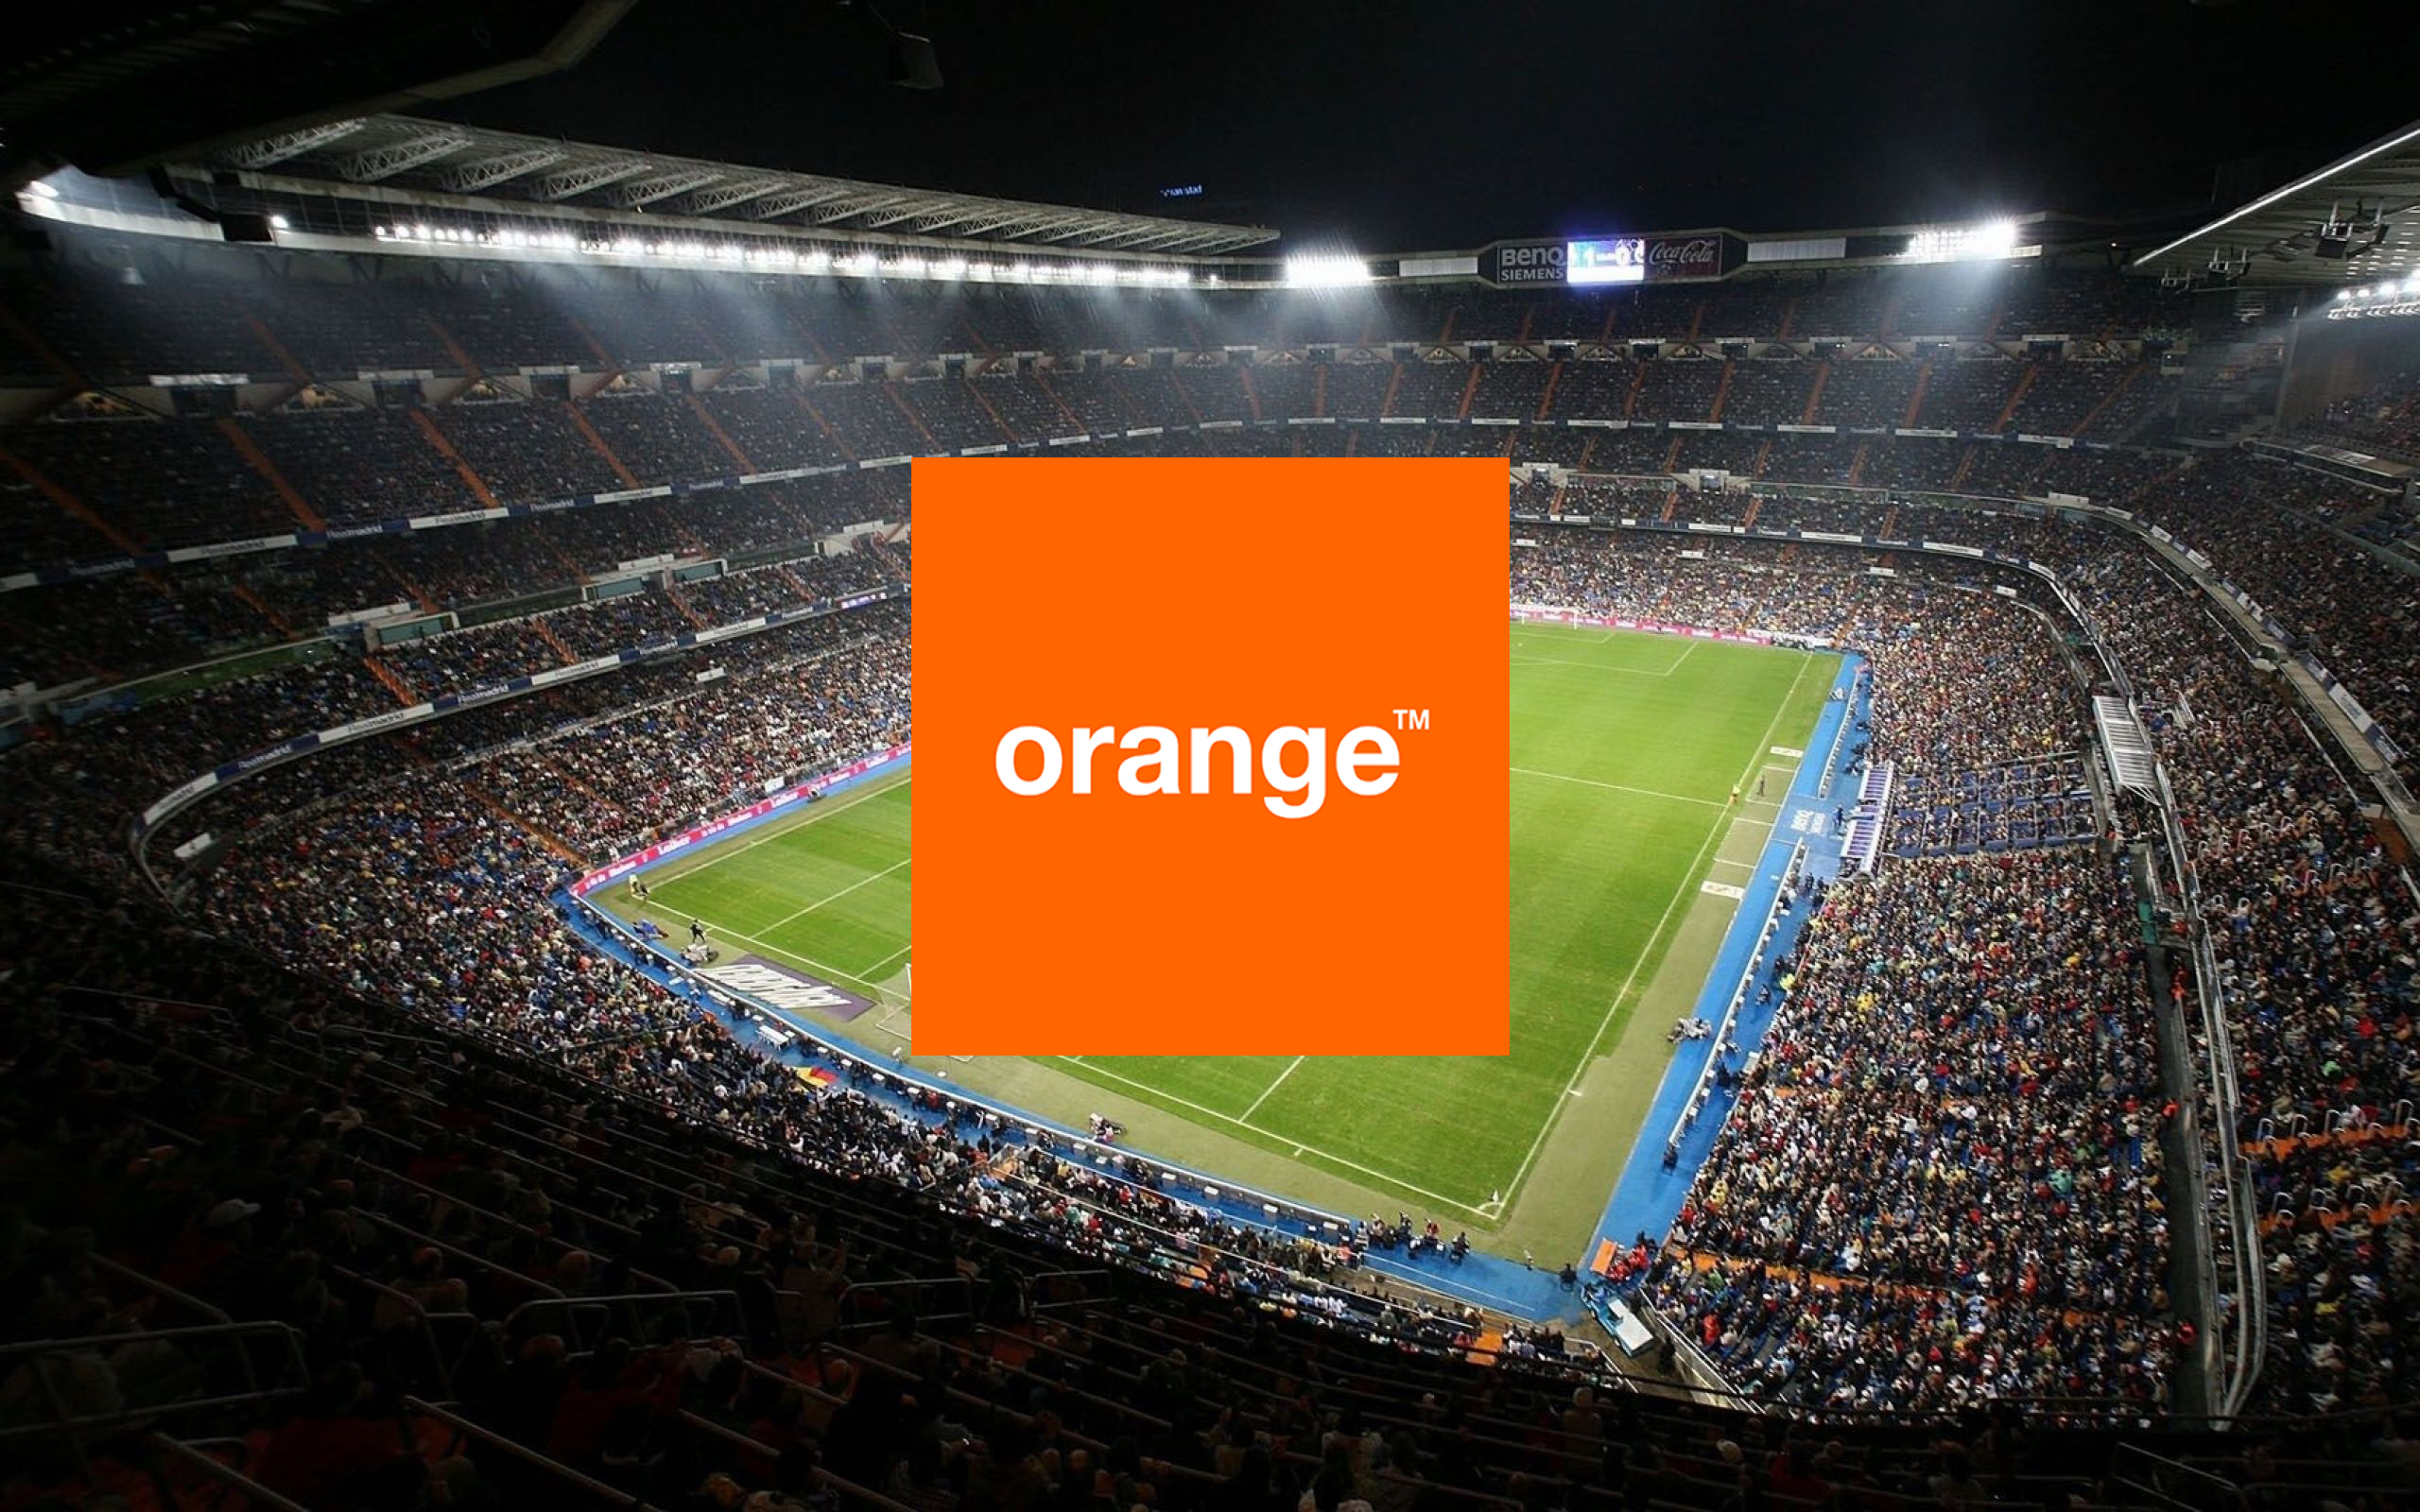 Orange mantiene su apuesta por el fútbol y lanza una promoción para verlo a mitad de precio toda la temporada
 